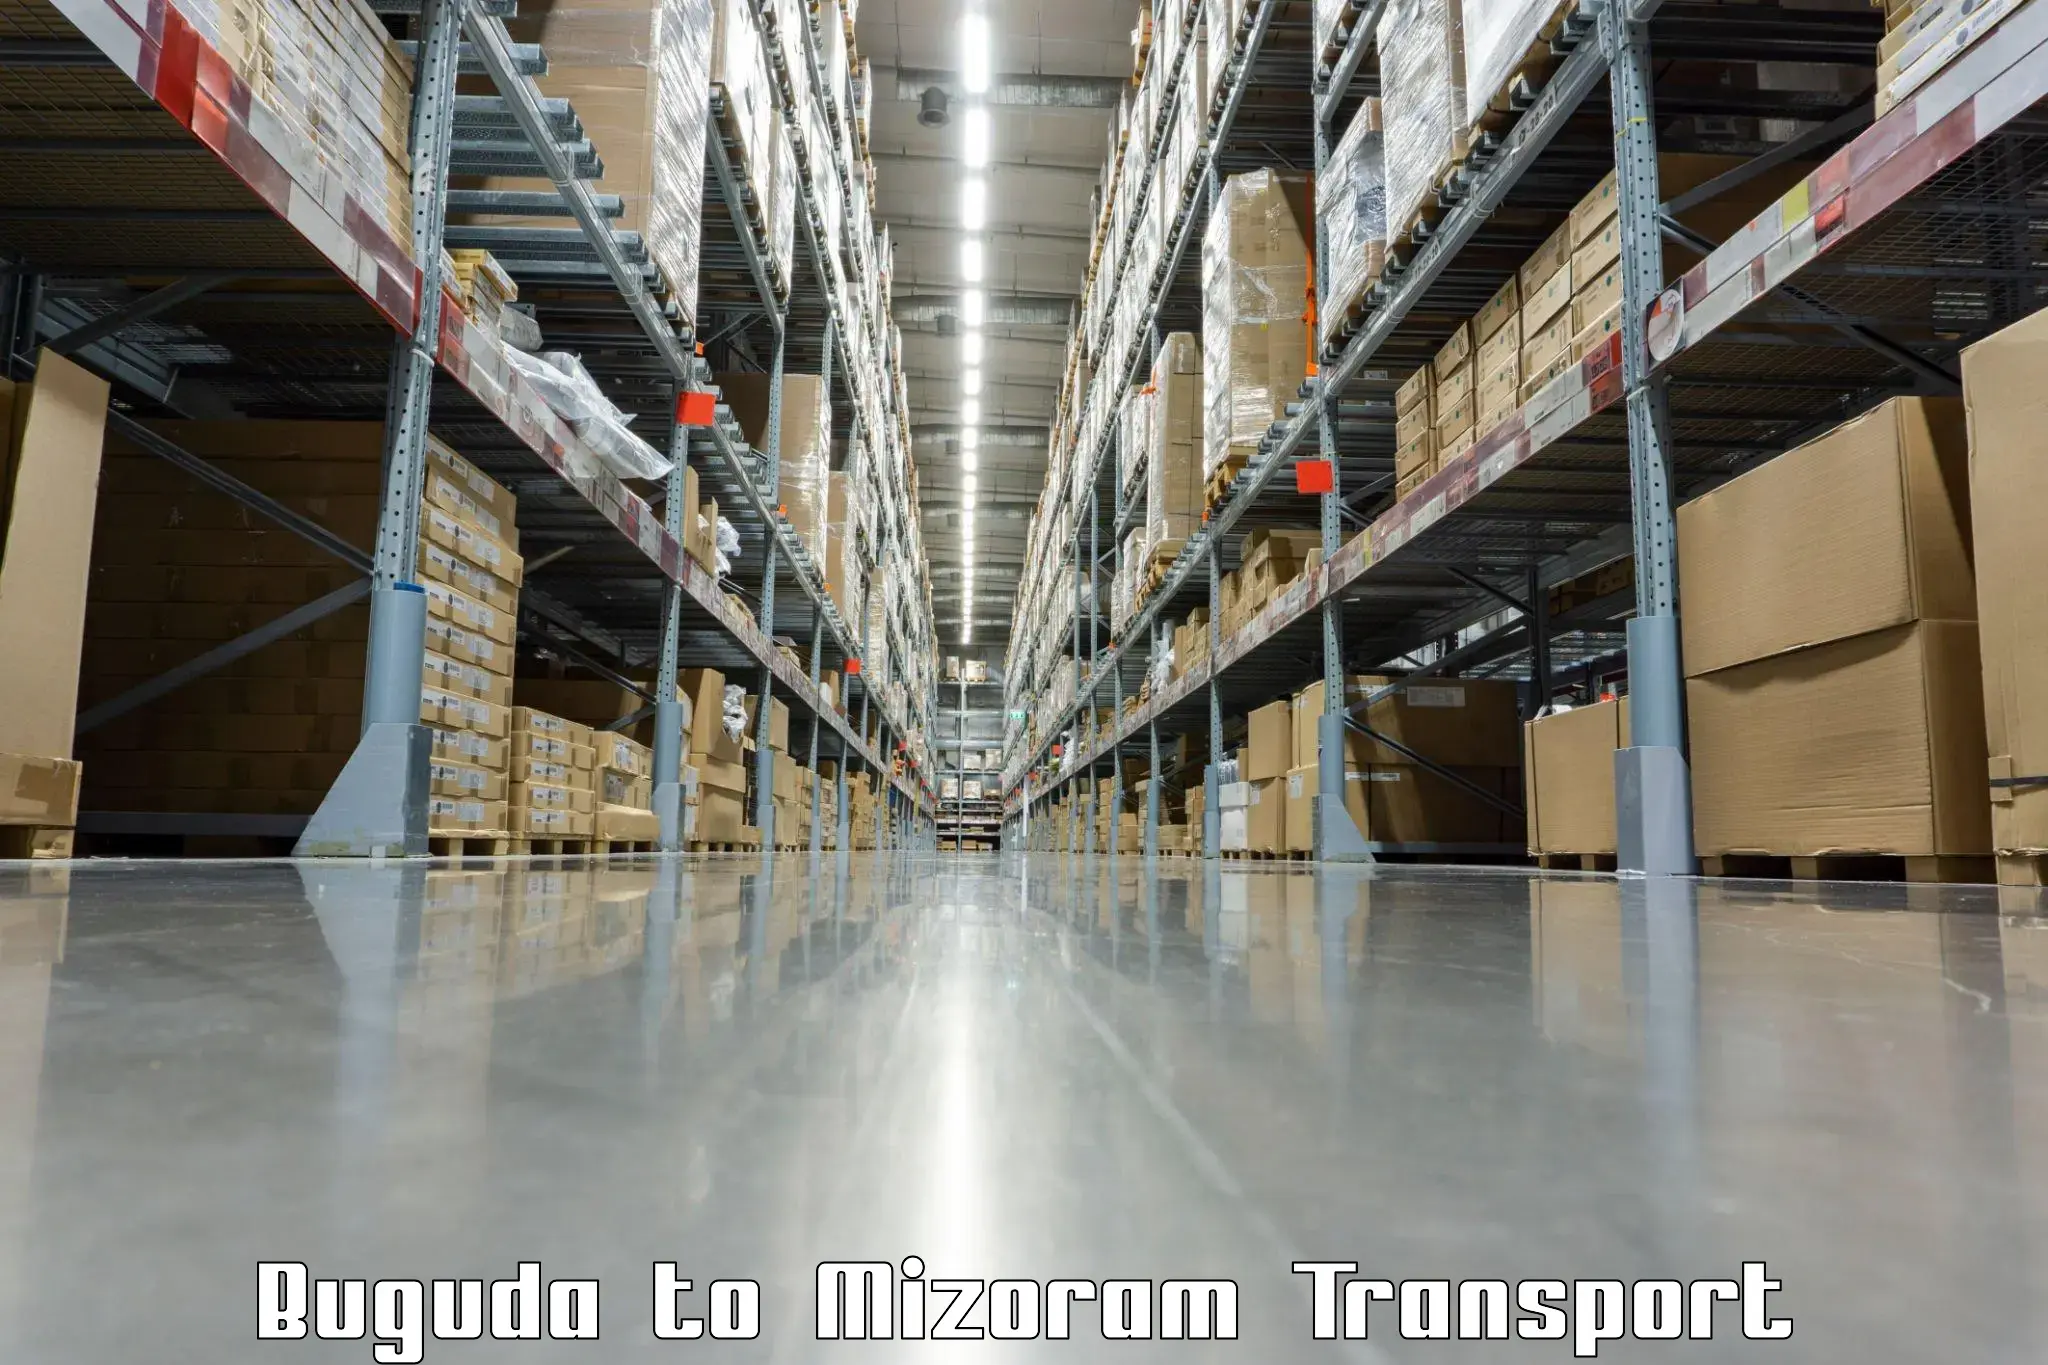 India truck logistics services Buguda to Mizoram